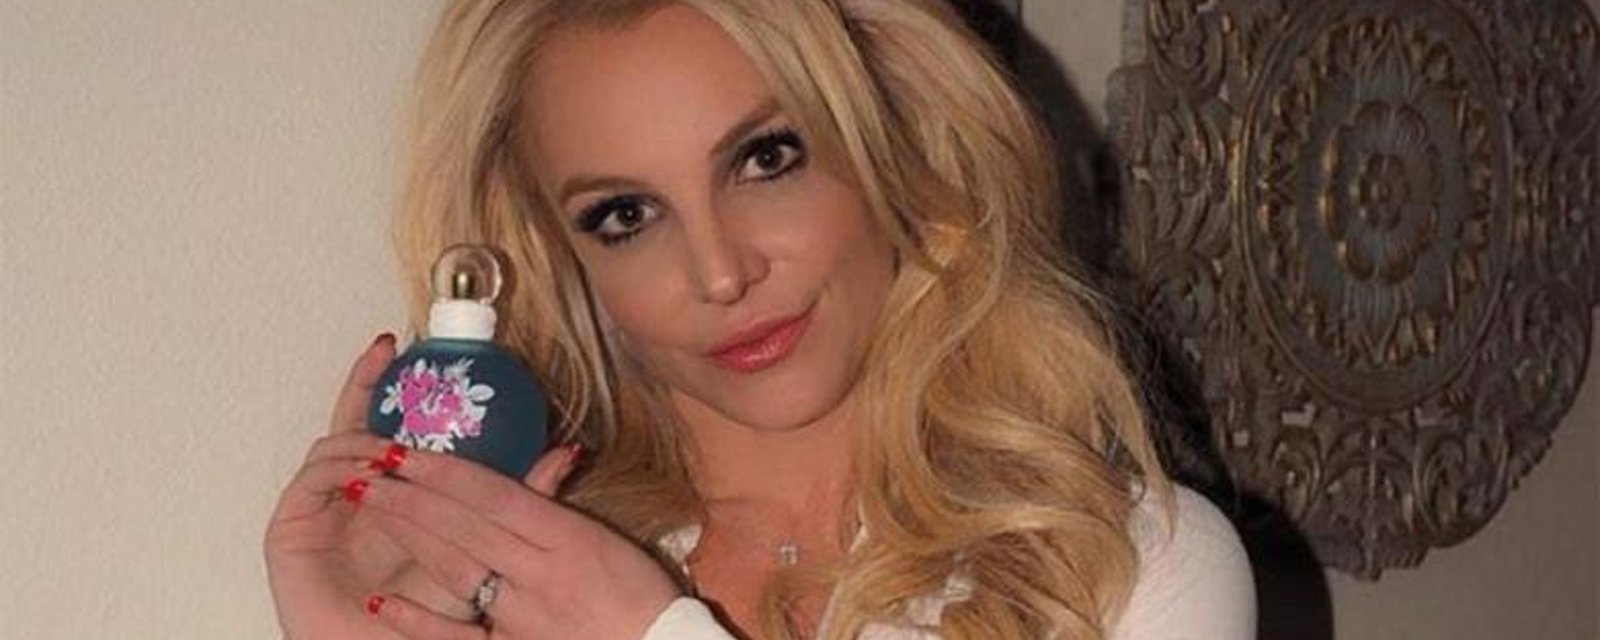 Ces vidéos sexys de Britney Spears provoquent de vives réactions sur le web!